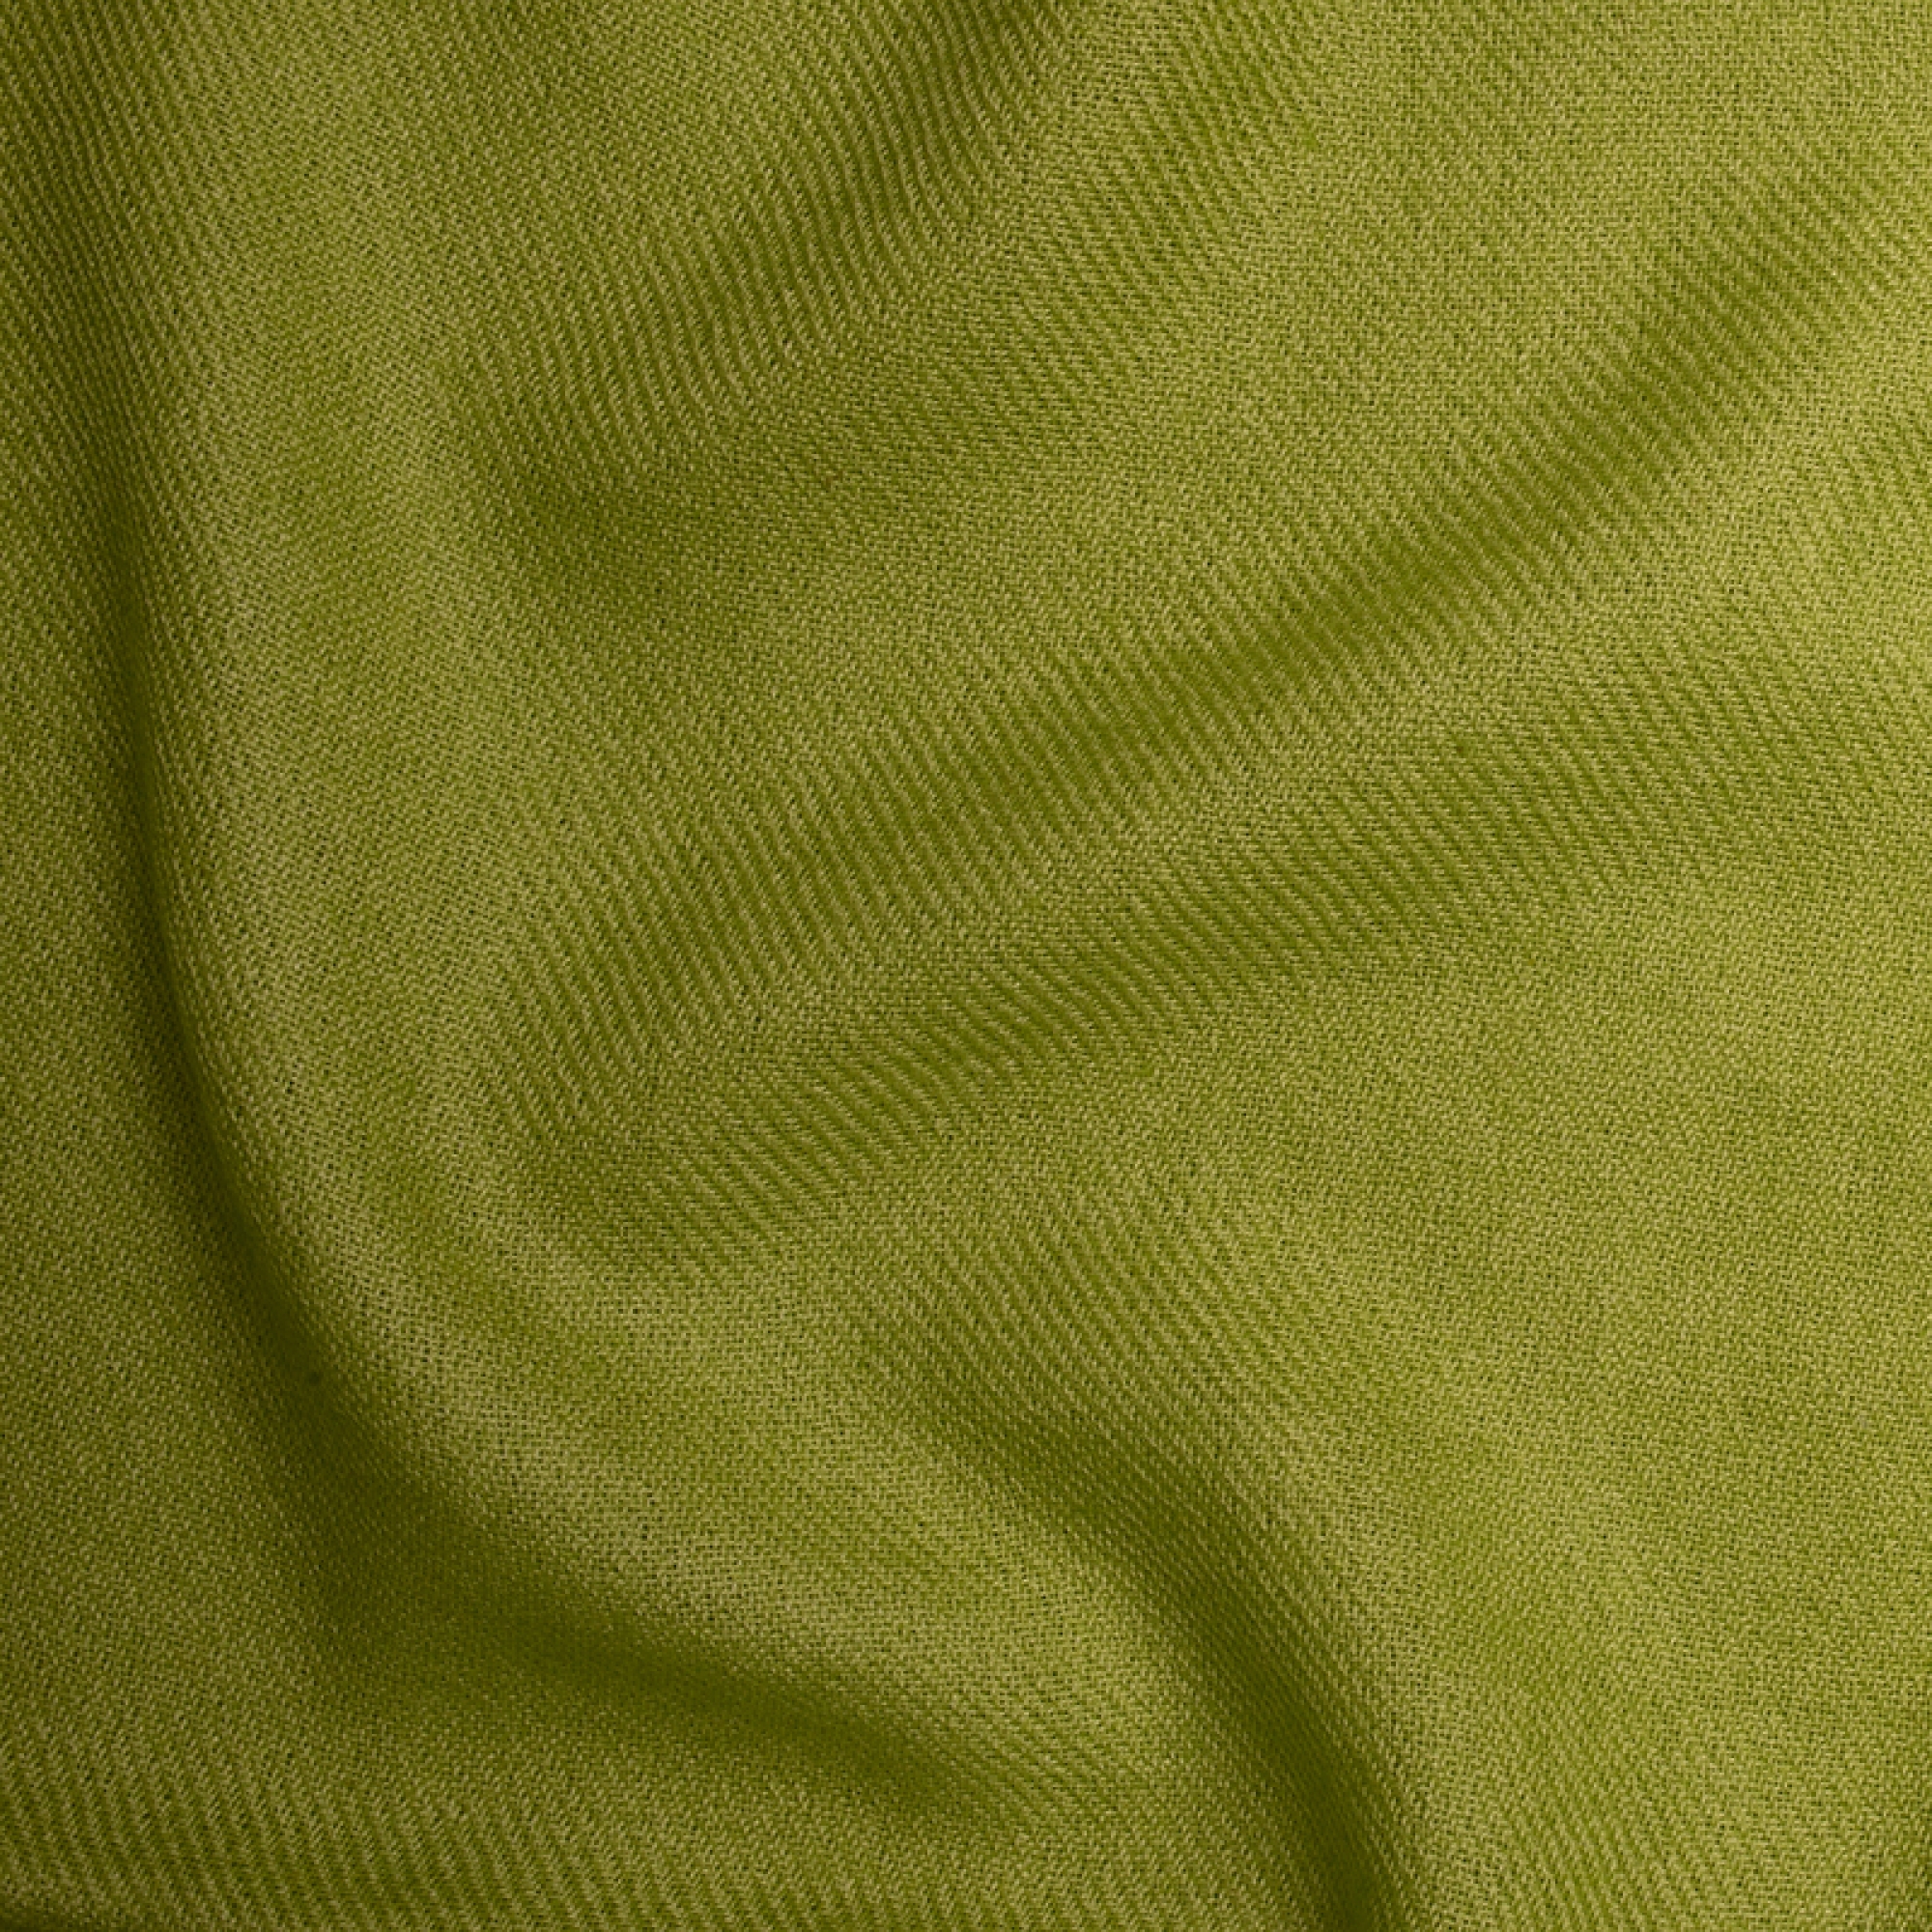 Cashmere cashmere donna scialli niry kiwi 200x90cm